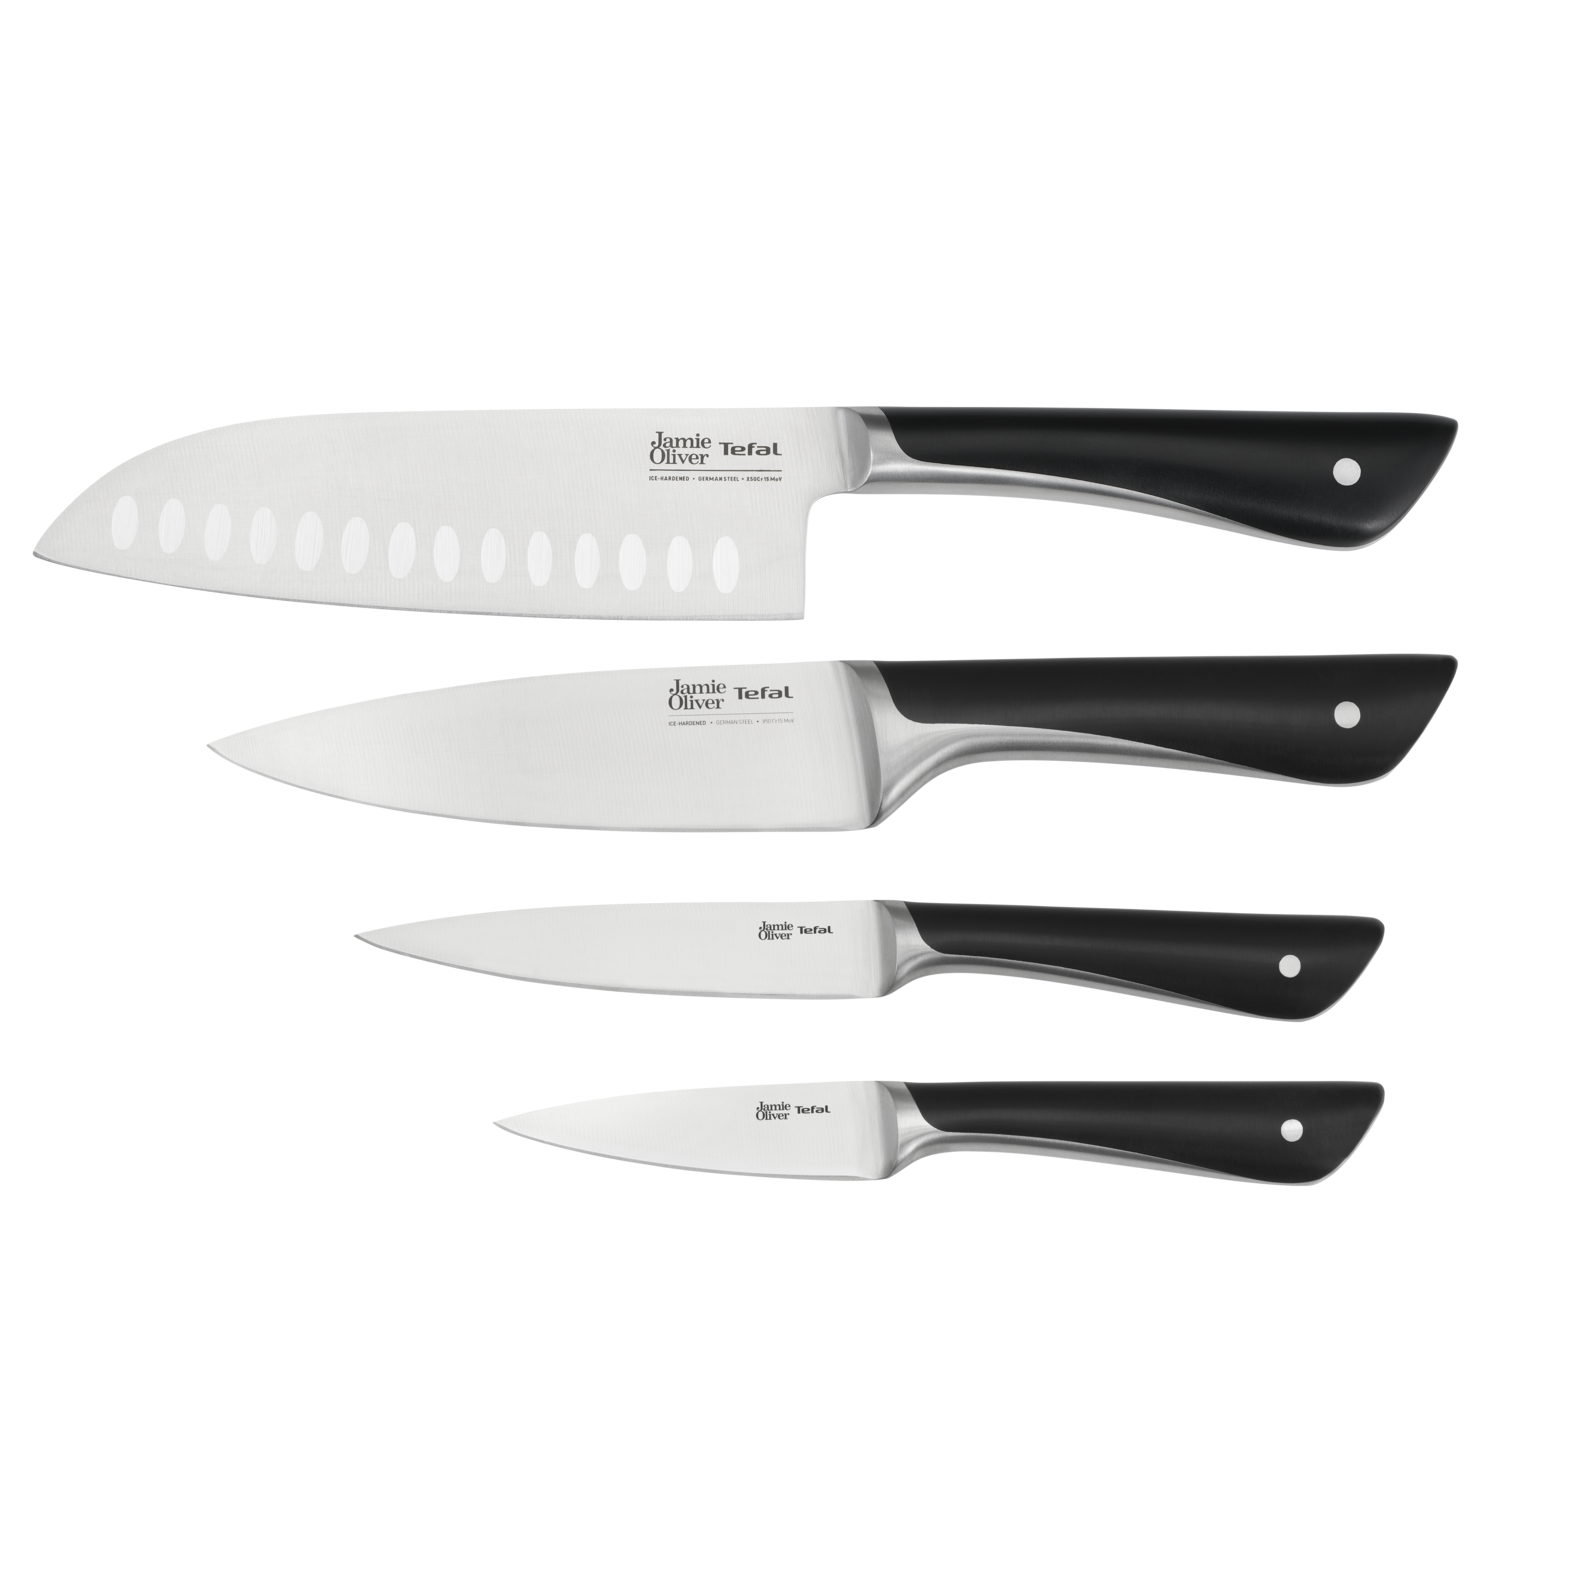 Набор ножей Jamie Oliver 4 предмета K267S456, цвет серебристый/черный